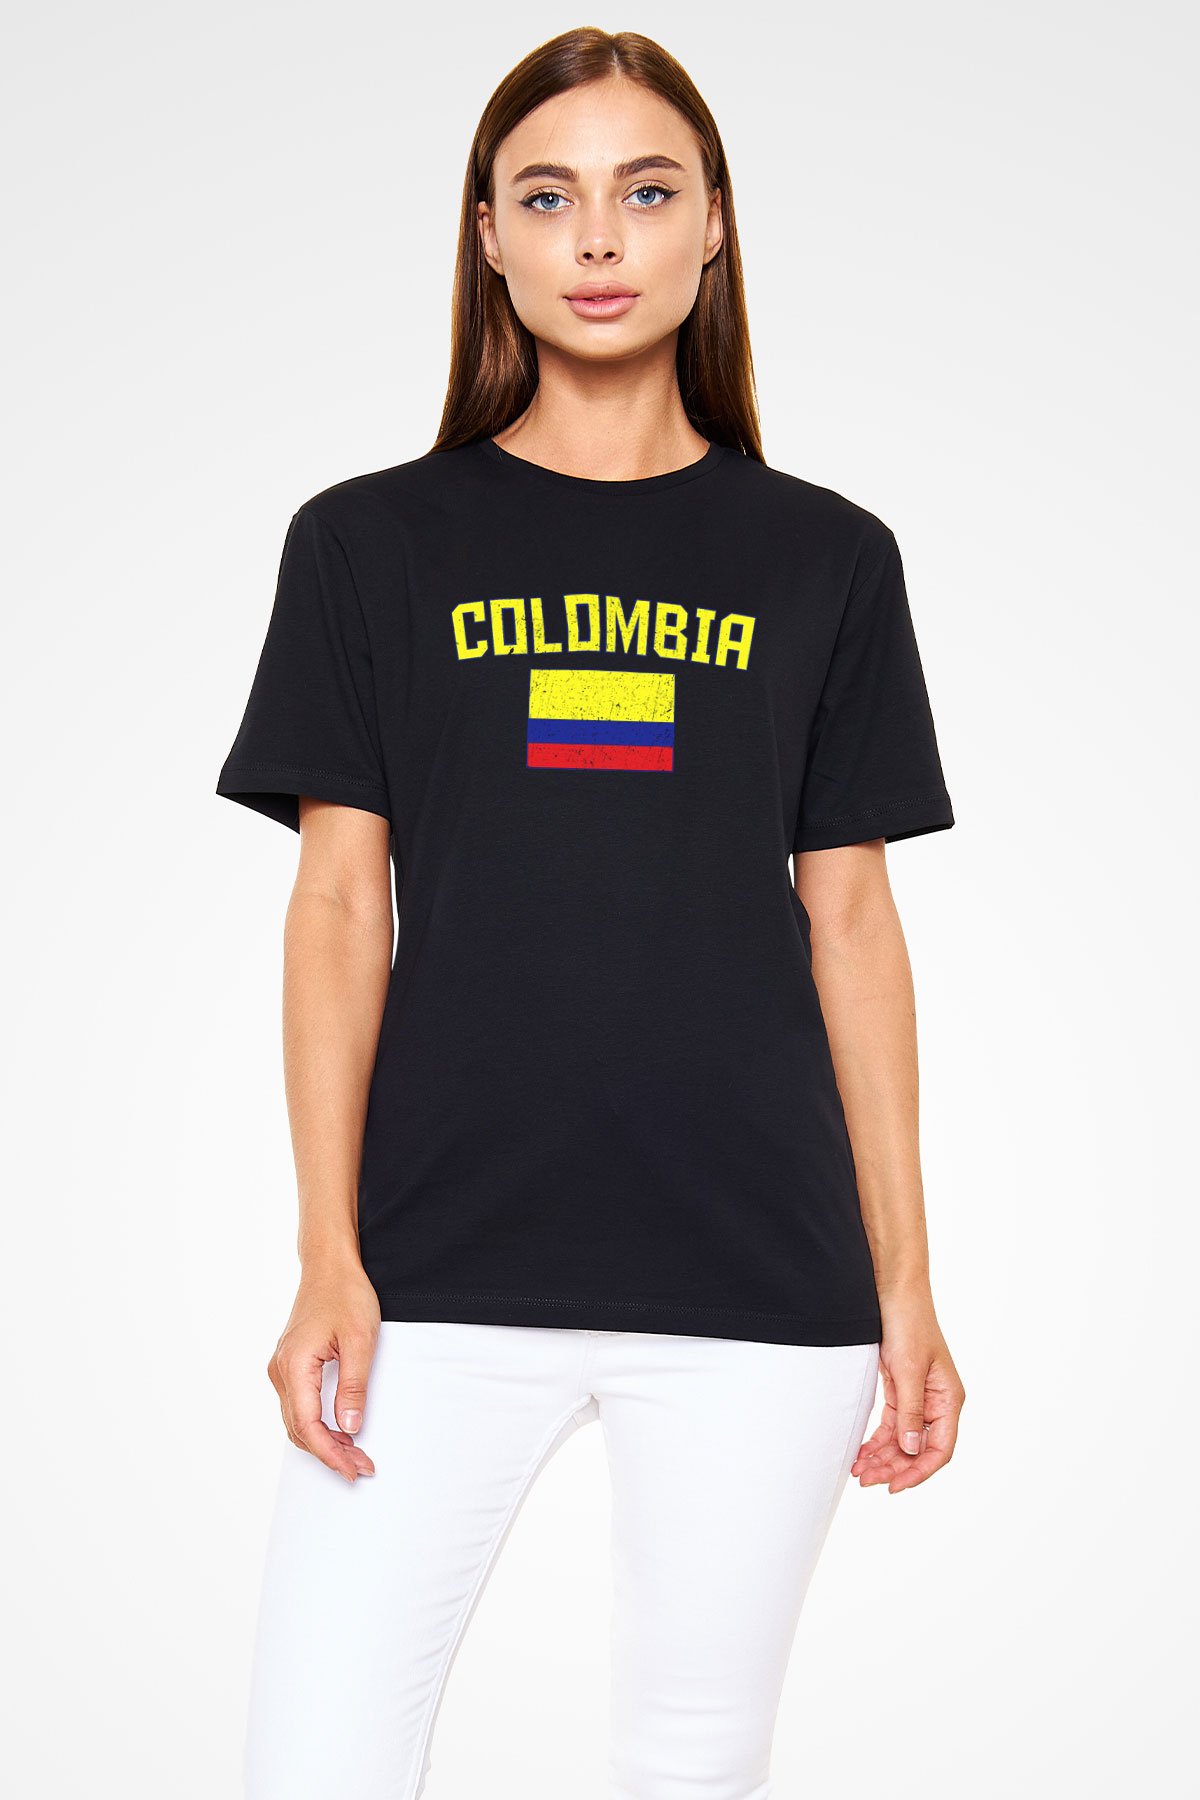 Kolombiya Siyah Unisex Tişört - T-Shirt | TisortFabrikasi